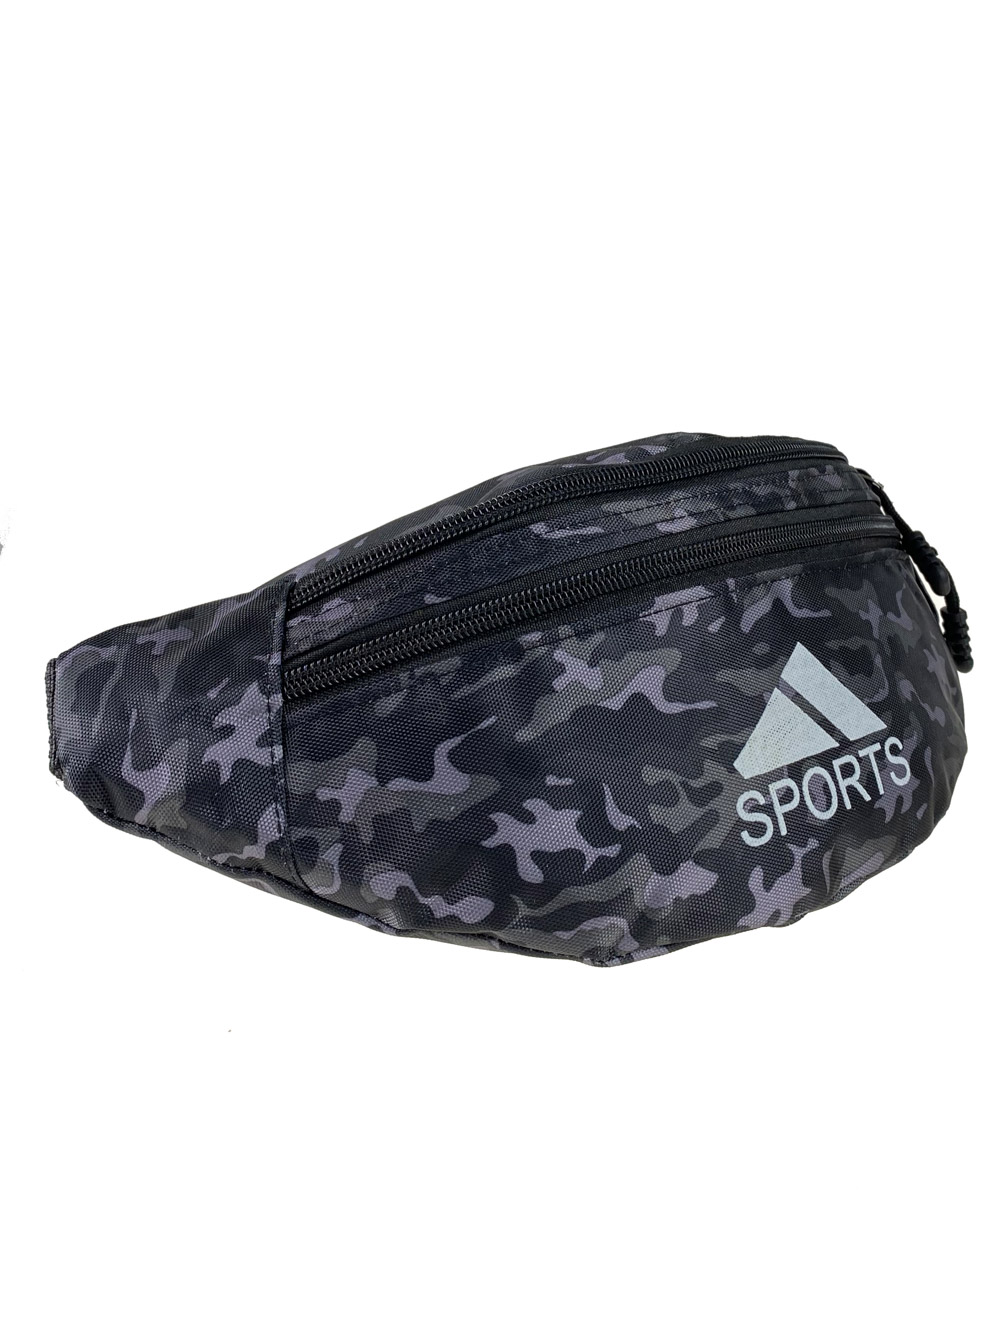 Спортивная текстильная сумка на пояс с камуфляжным принтом, оттенки серого